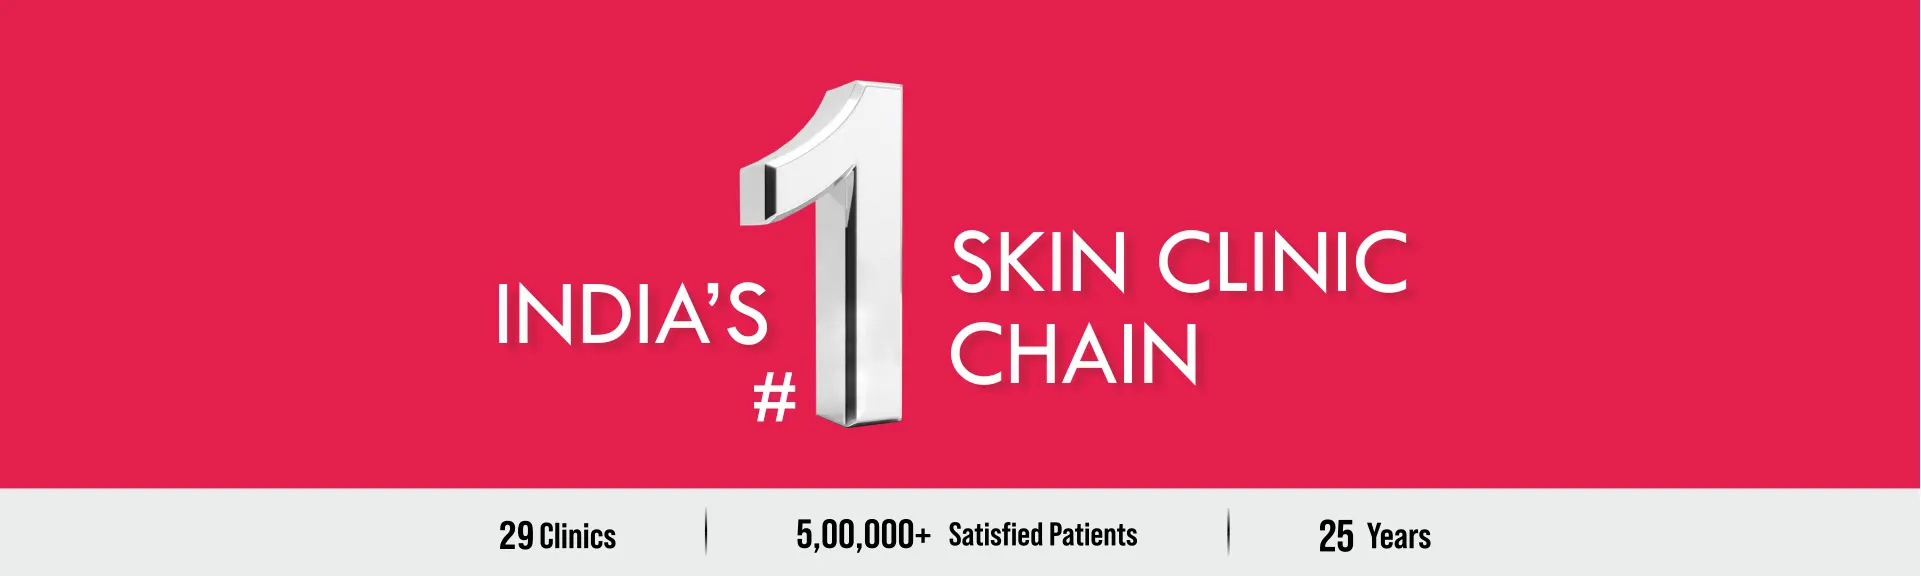 India's No.1 Skin Clinic Chain - Sakhiya Skin Clinic